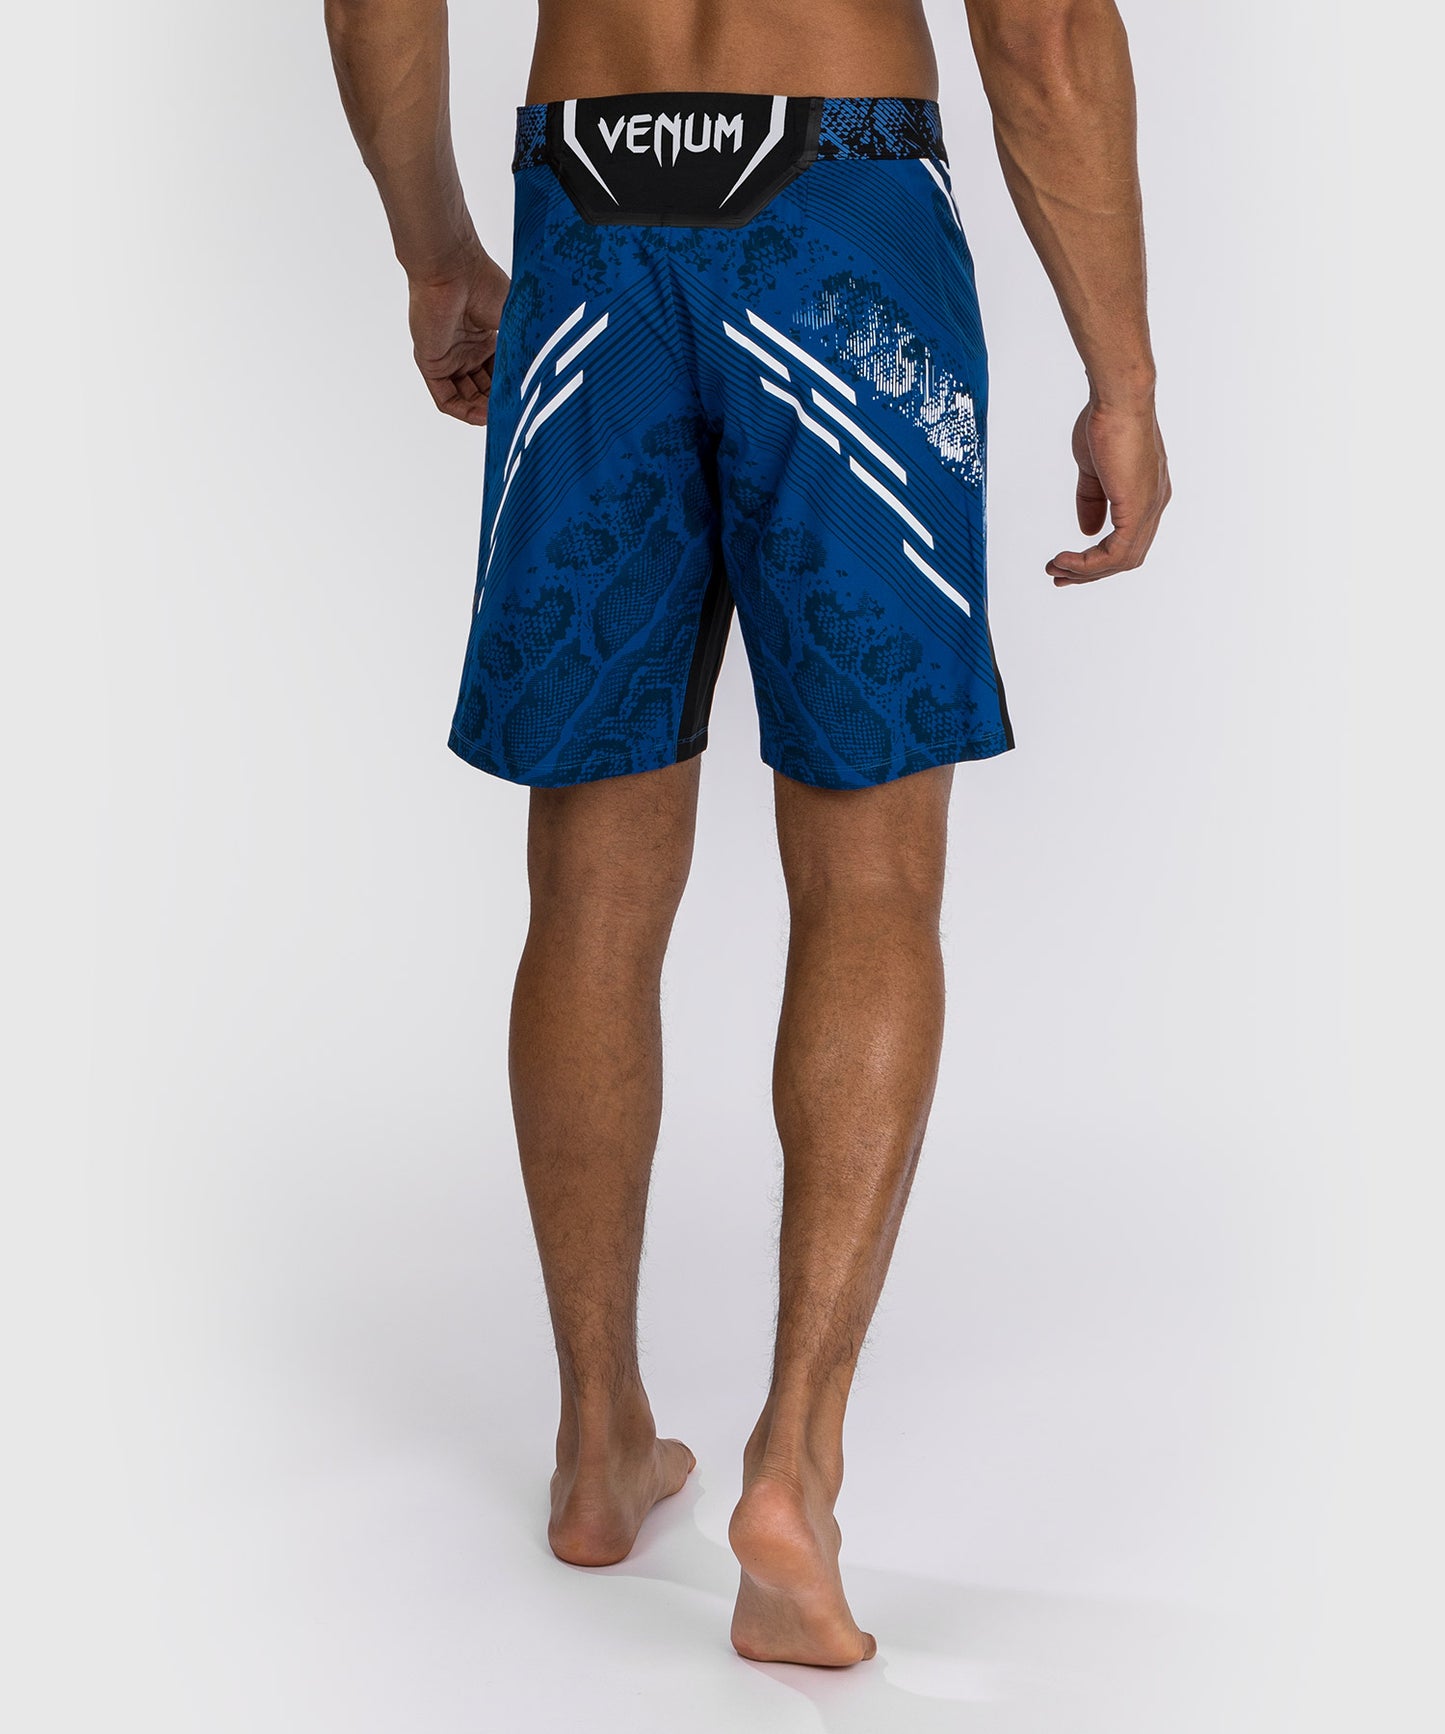 Pantaloncini da combattimento UFC Adrenaline by Venum personalizzati Authentic Fight Night - Uomo - Long Fit - Blu